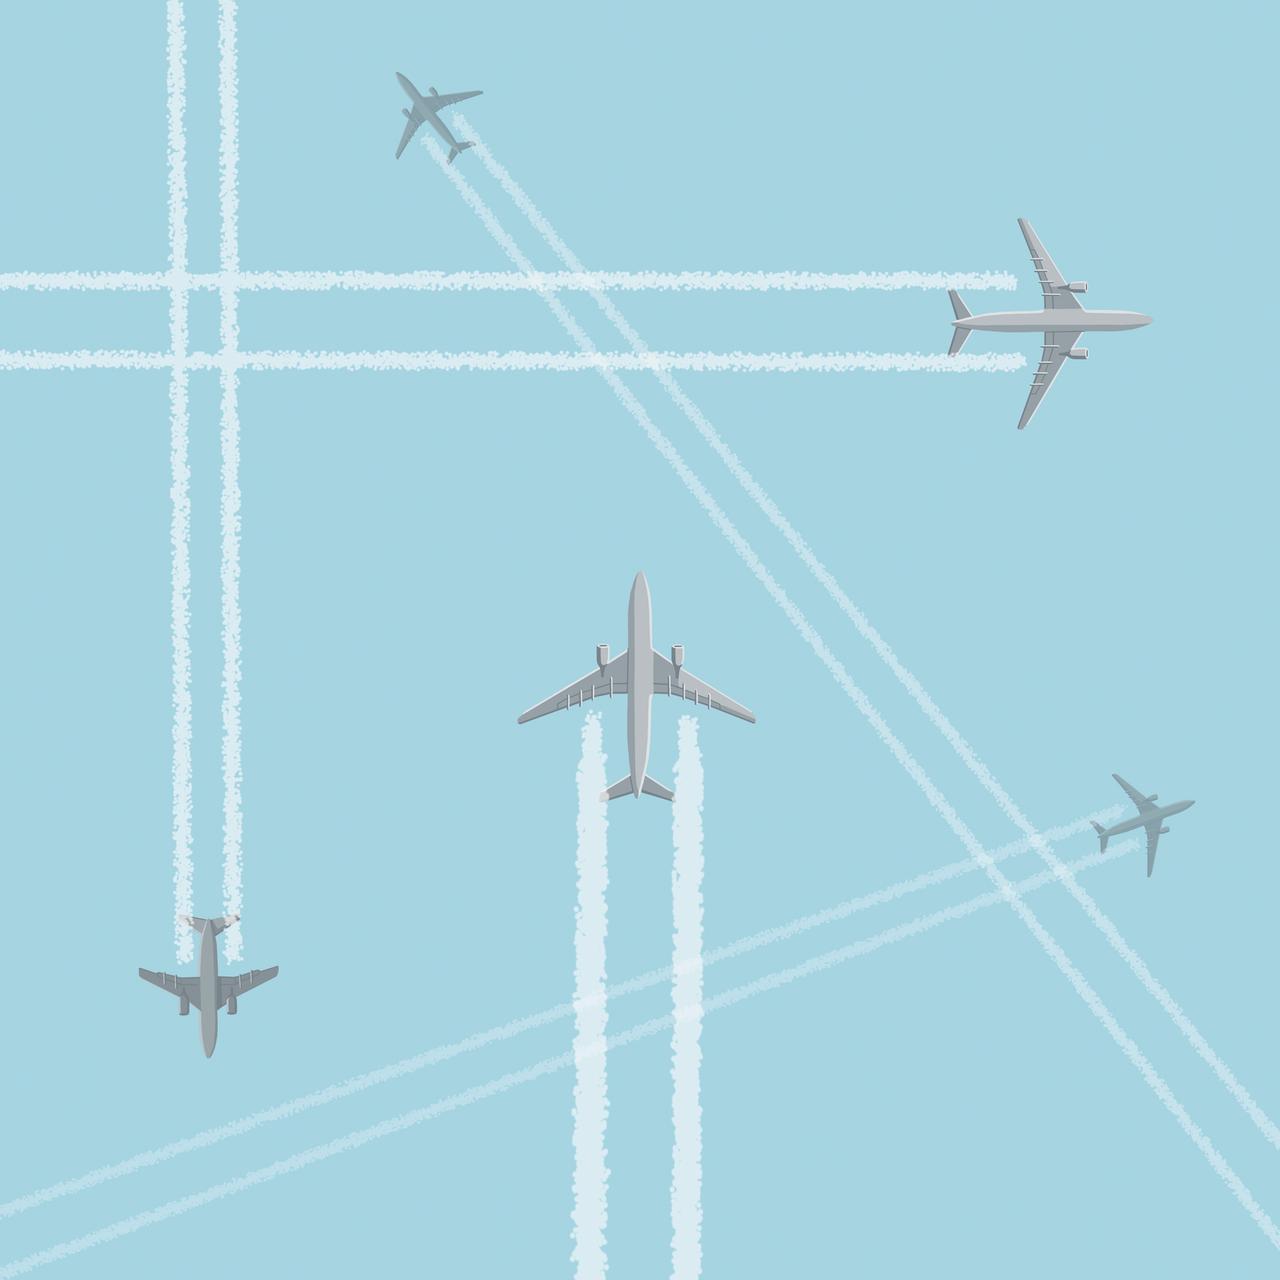 Illustration: Viele Flugzeuge am Himmel, die Kondensstreifen hinterlassen.